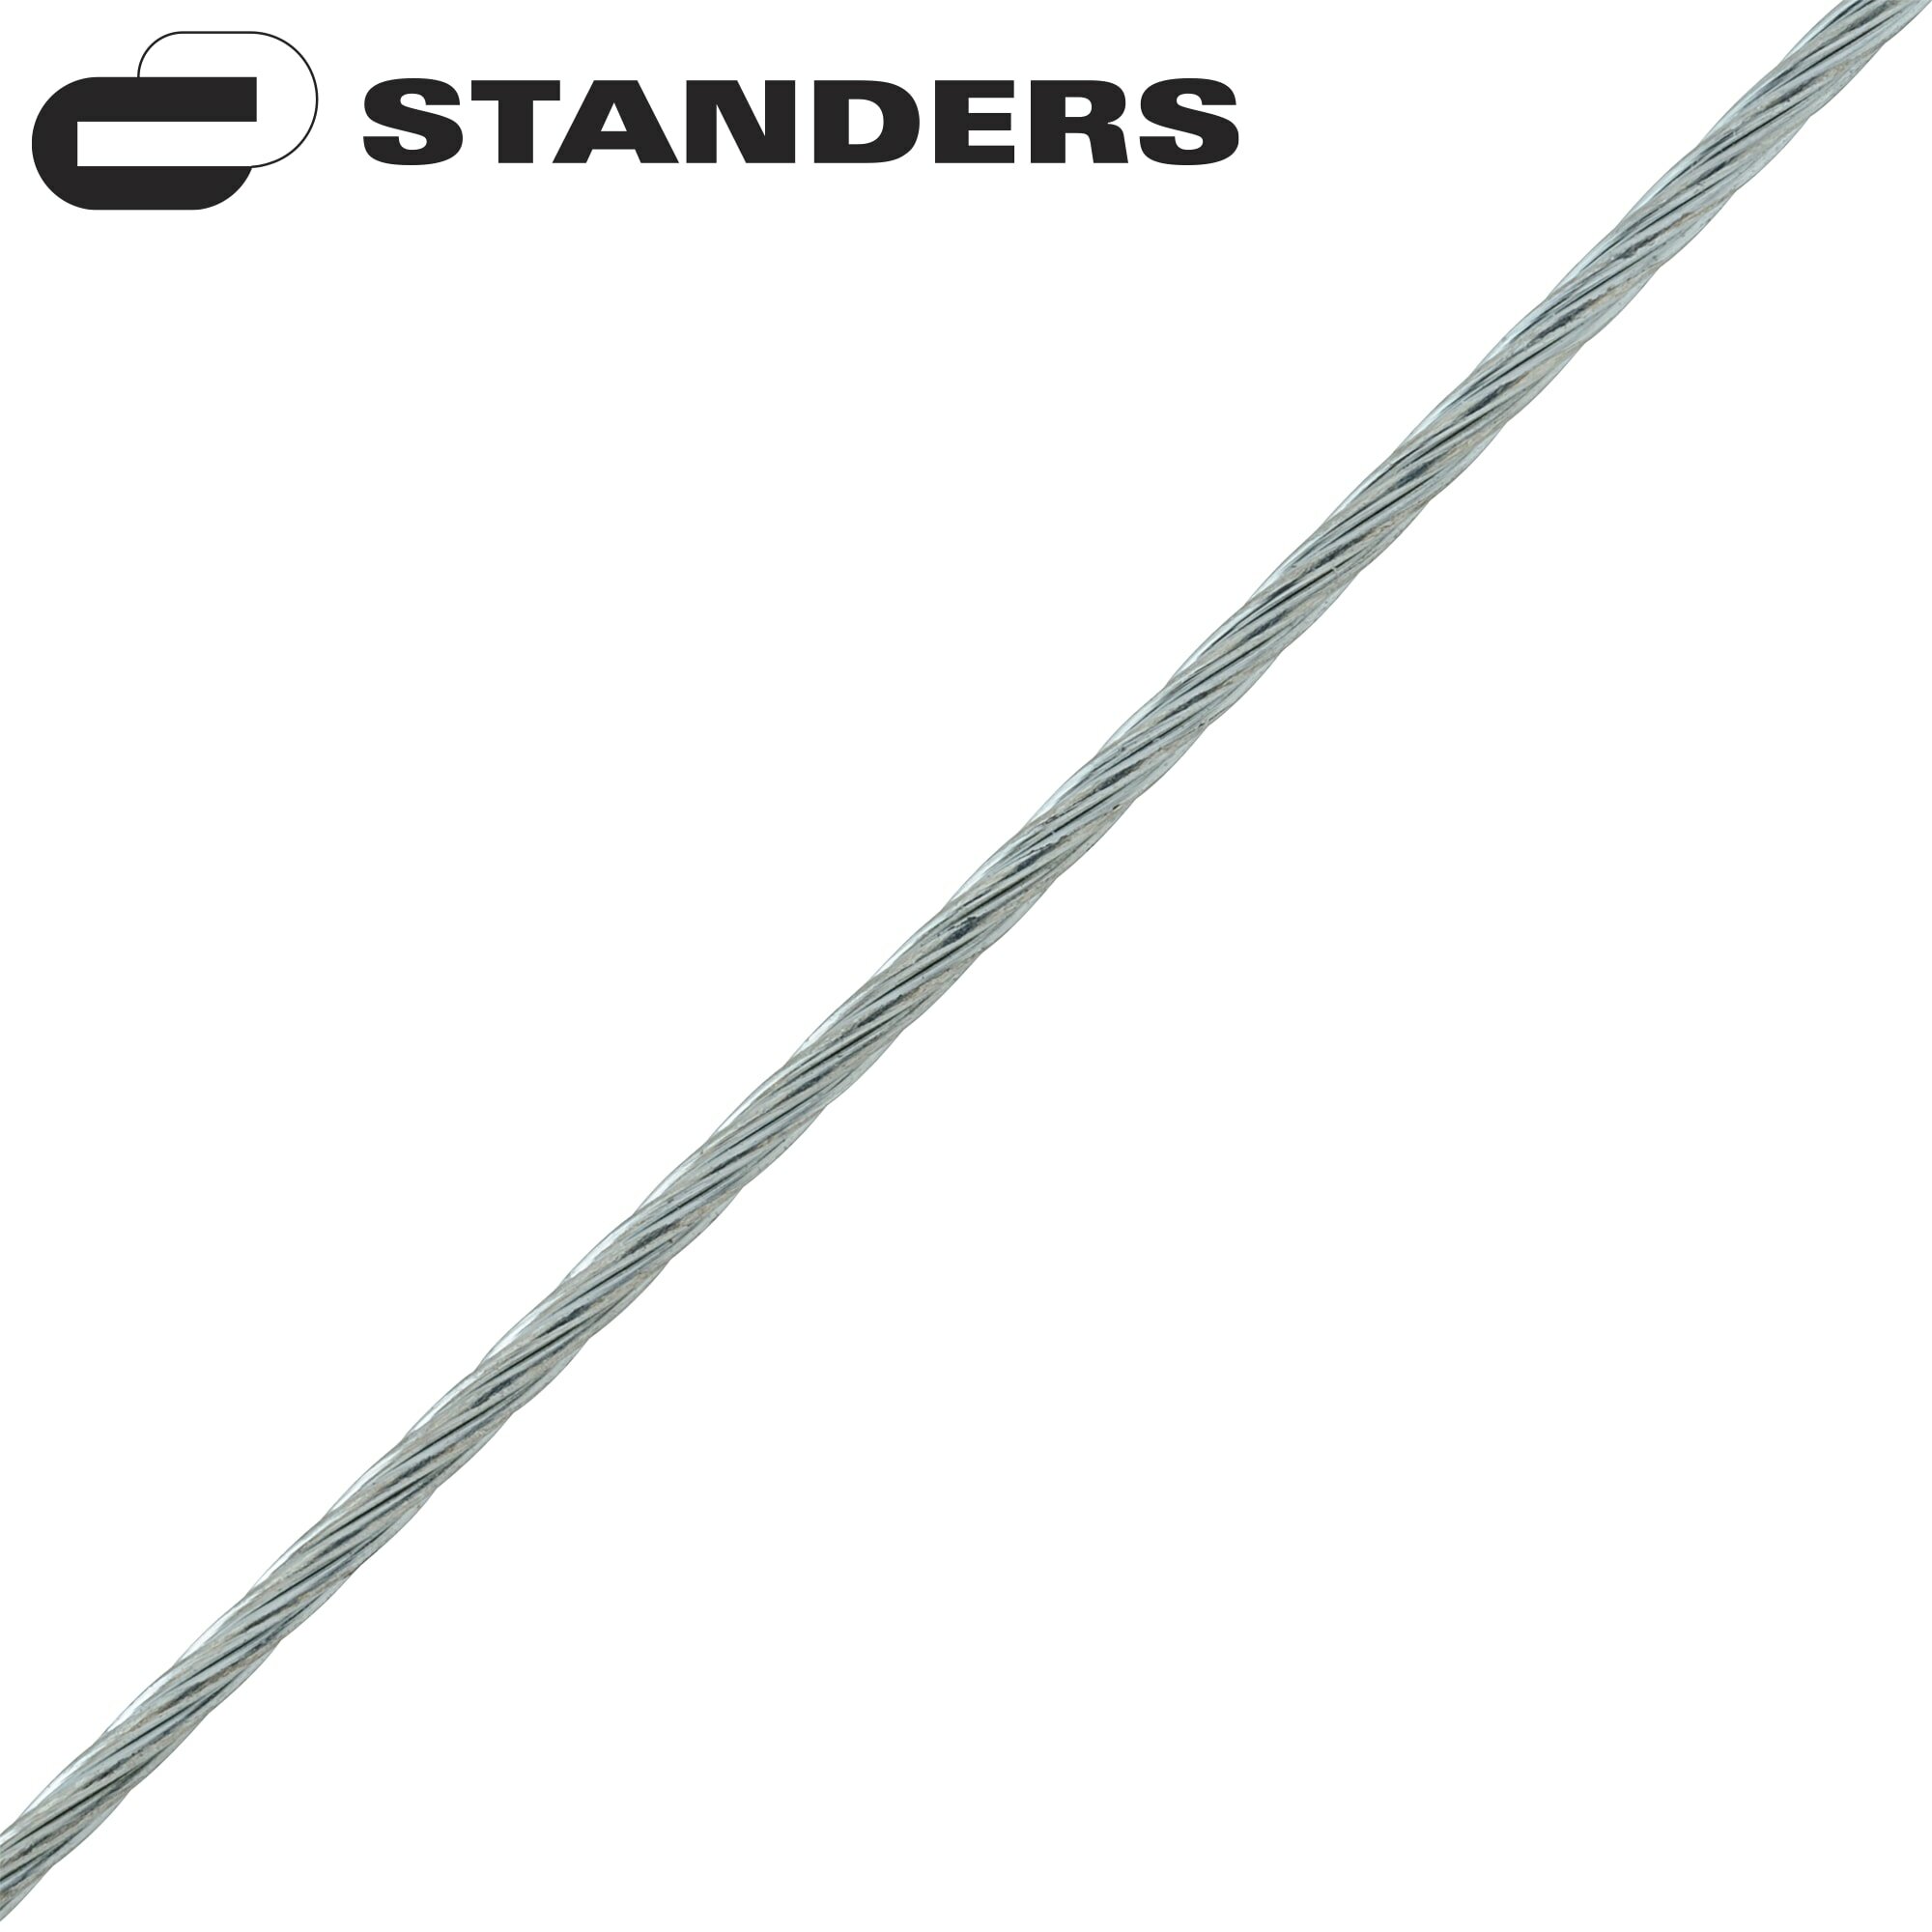 Трос стальной оцинкованный Standers 1 мм 5 м/уп, цвет серебро, 5 м/уп.